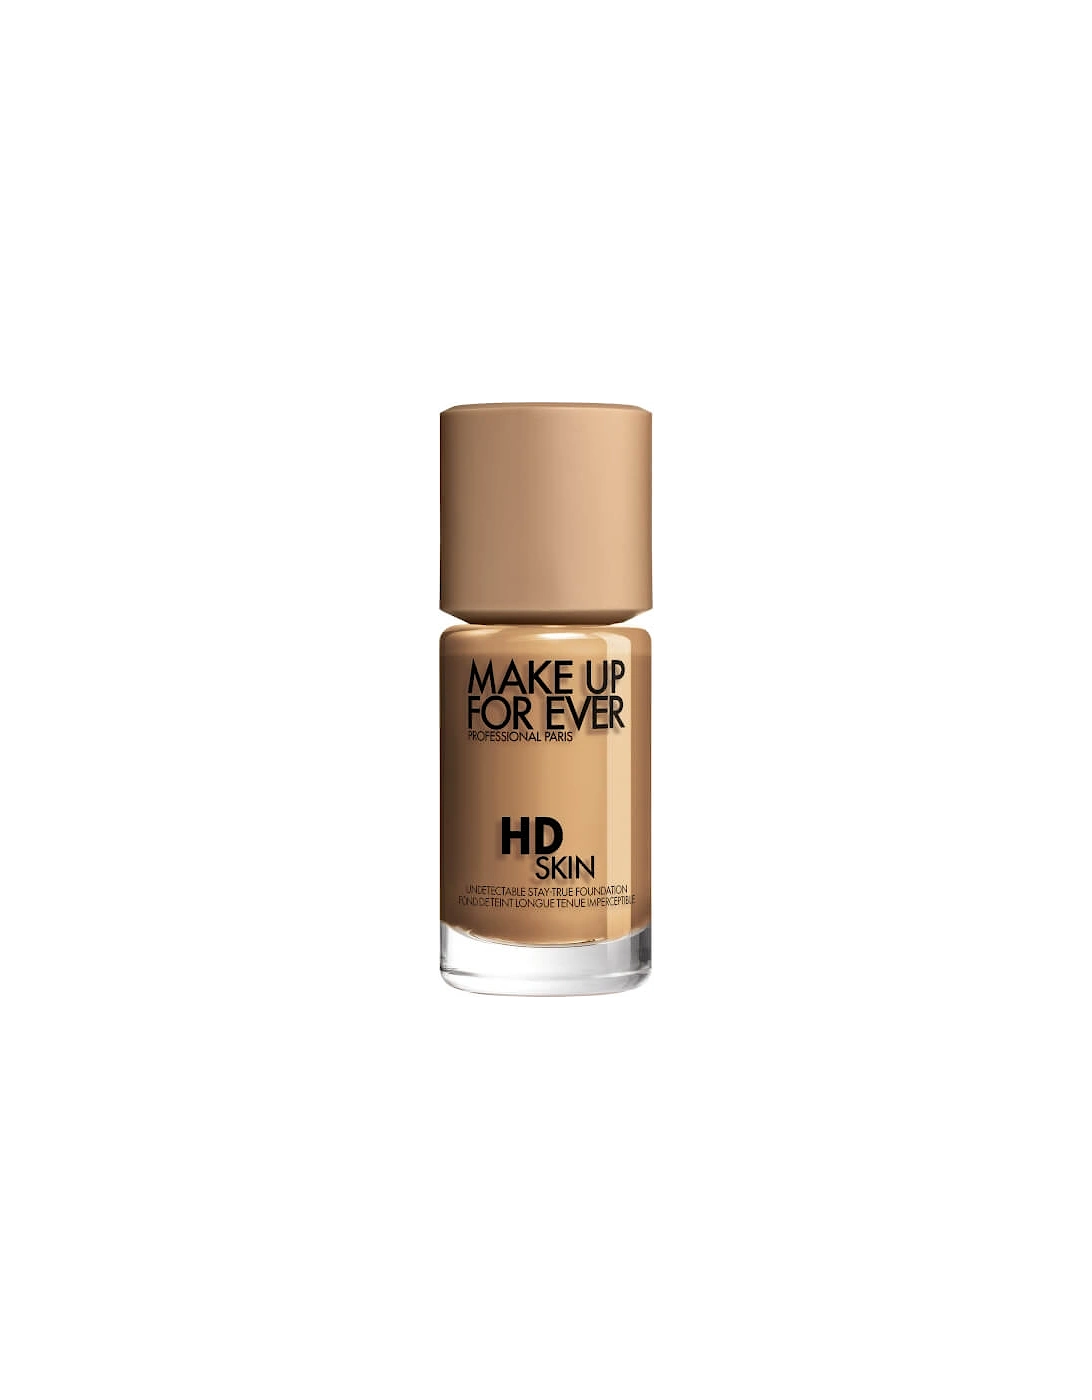 HD Skin Foundation - 3Y46 Warm Cinnamon, 2 of 1